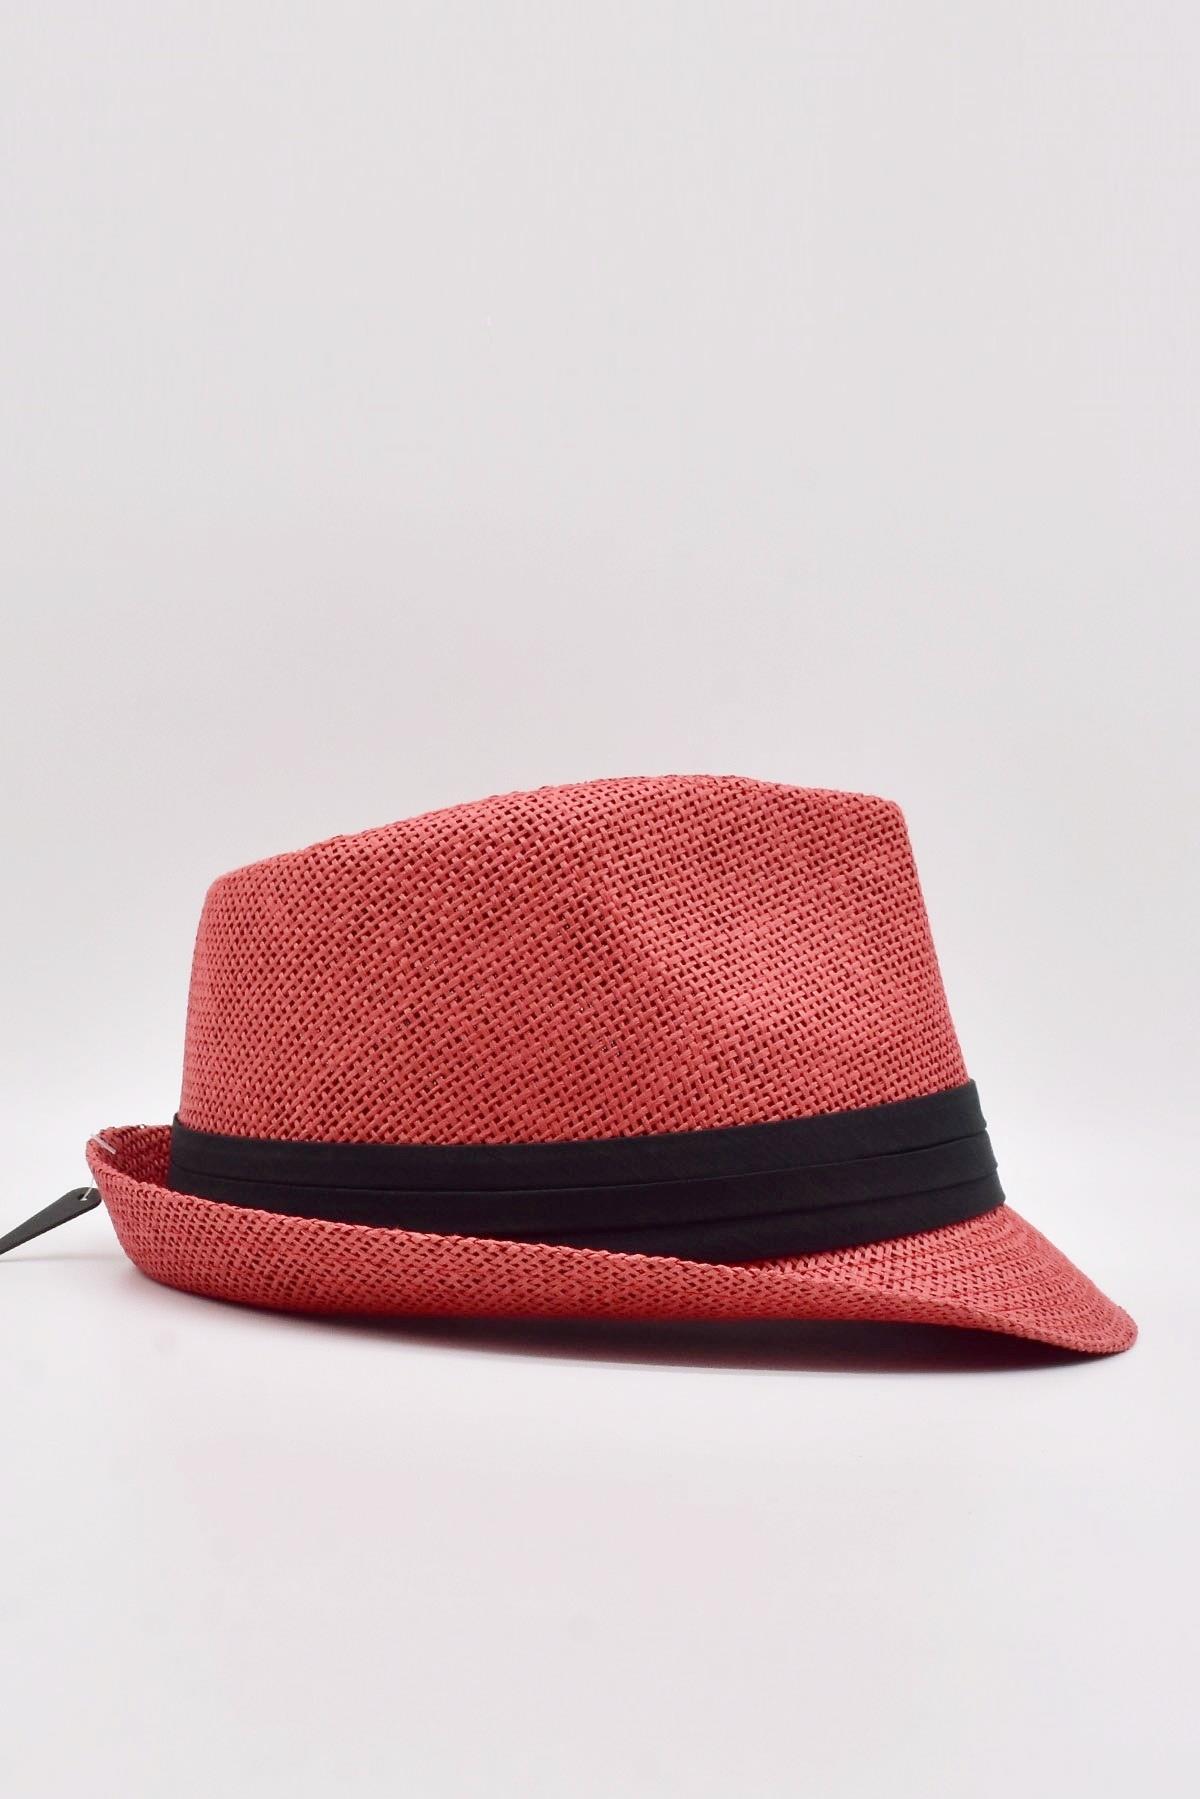 Kadın Hasır Kırmızı Şapka KLH0845